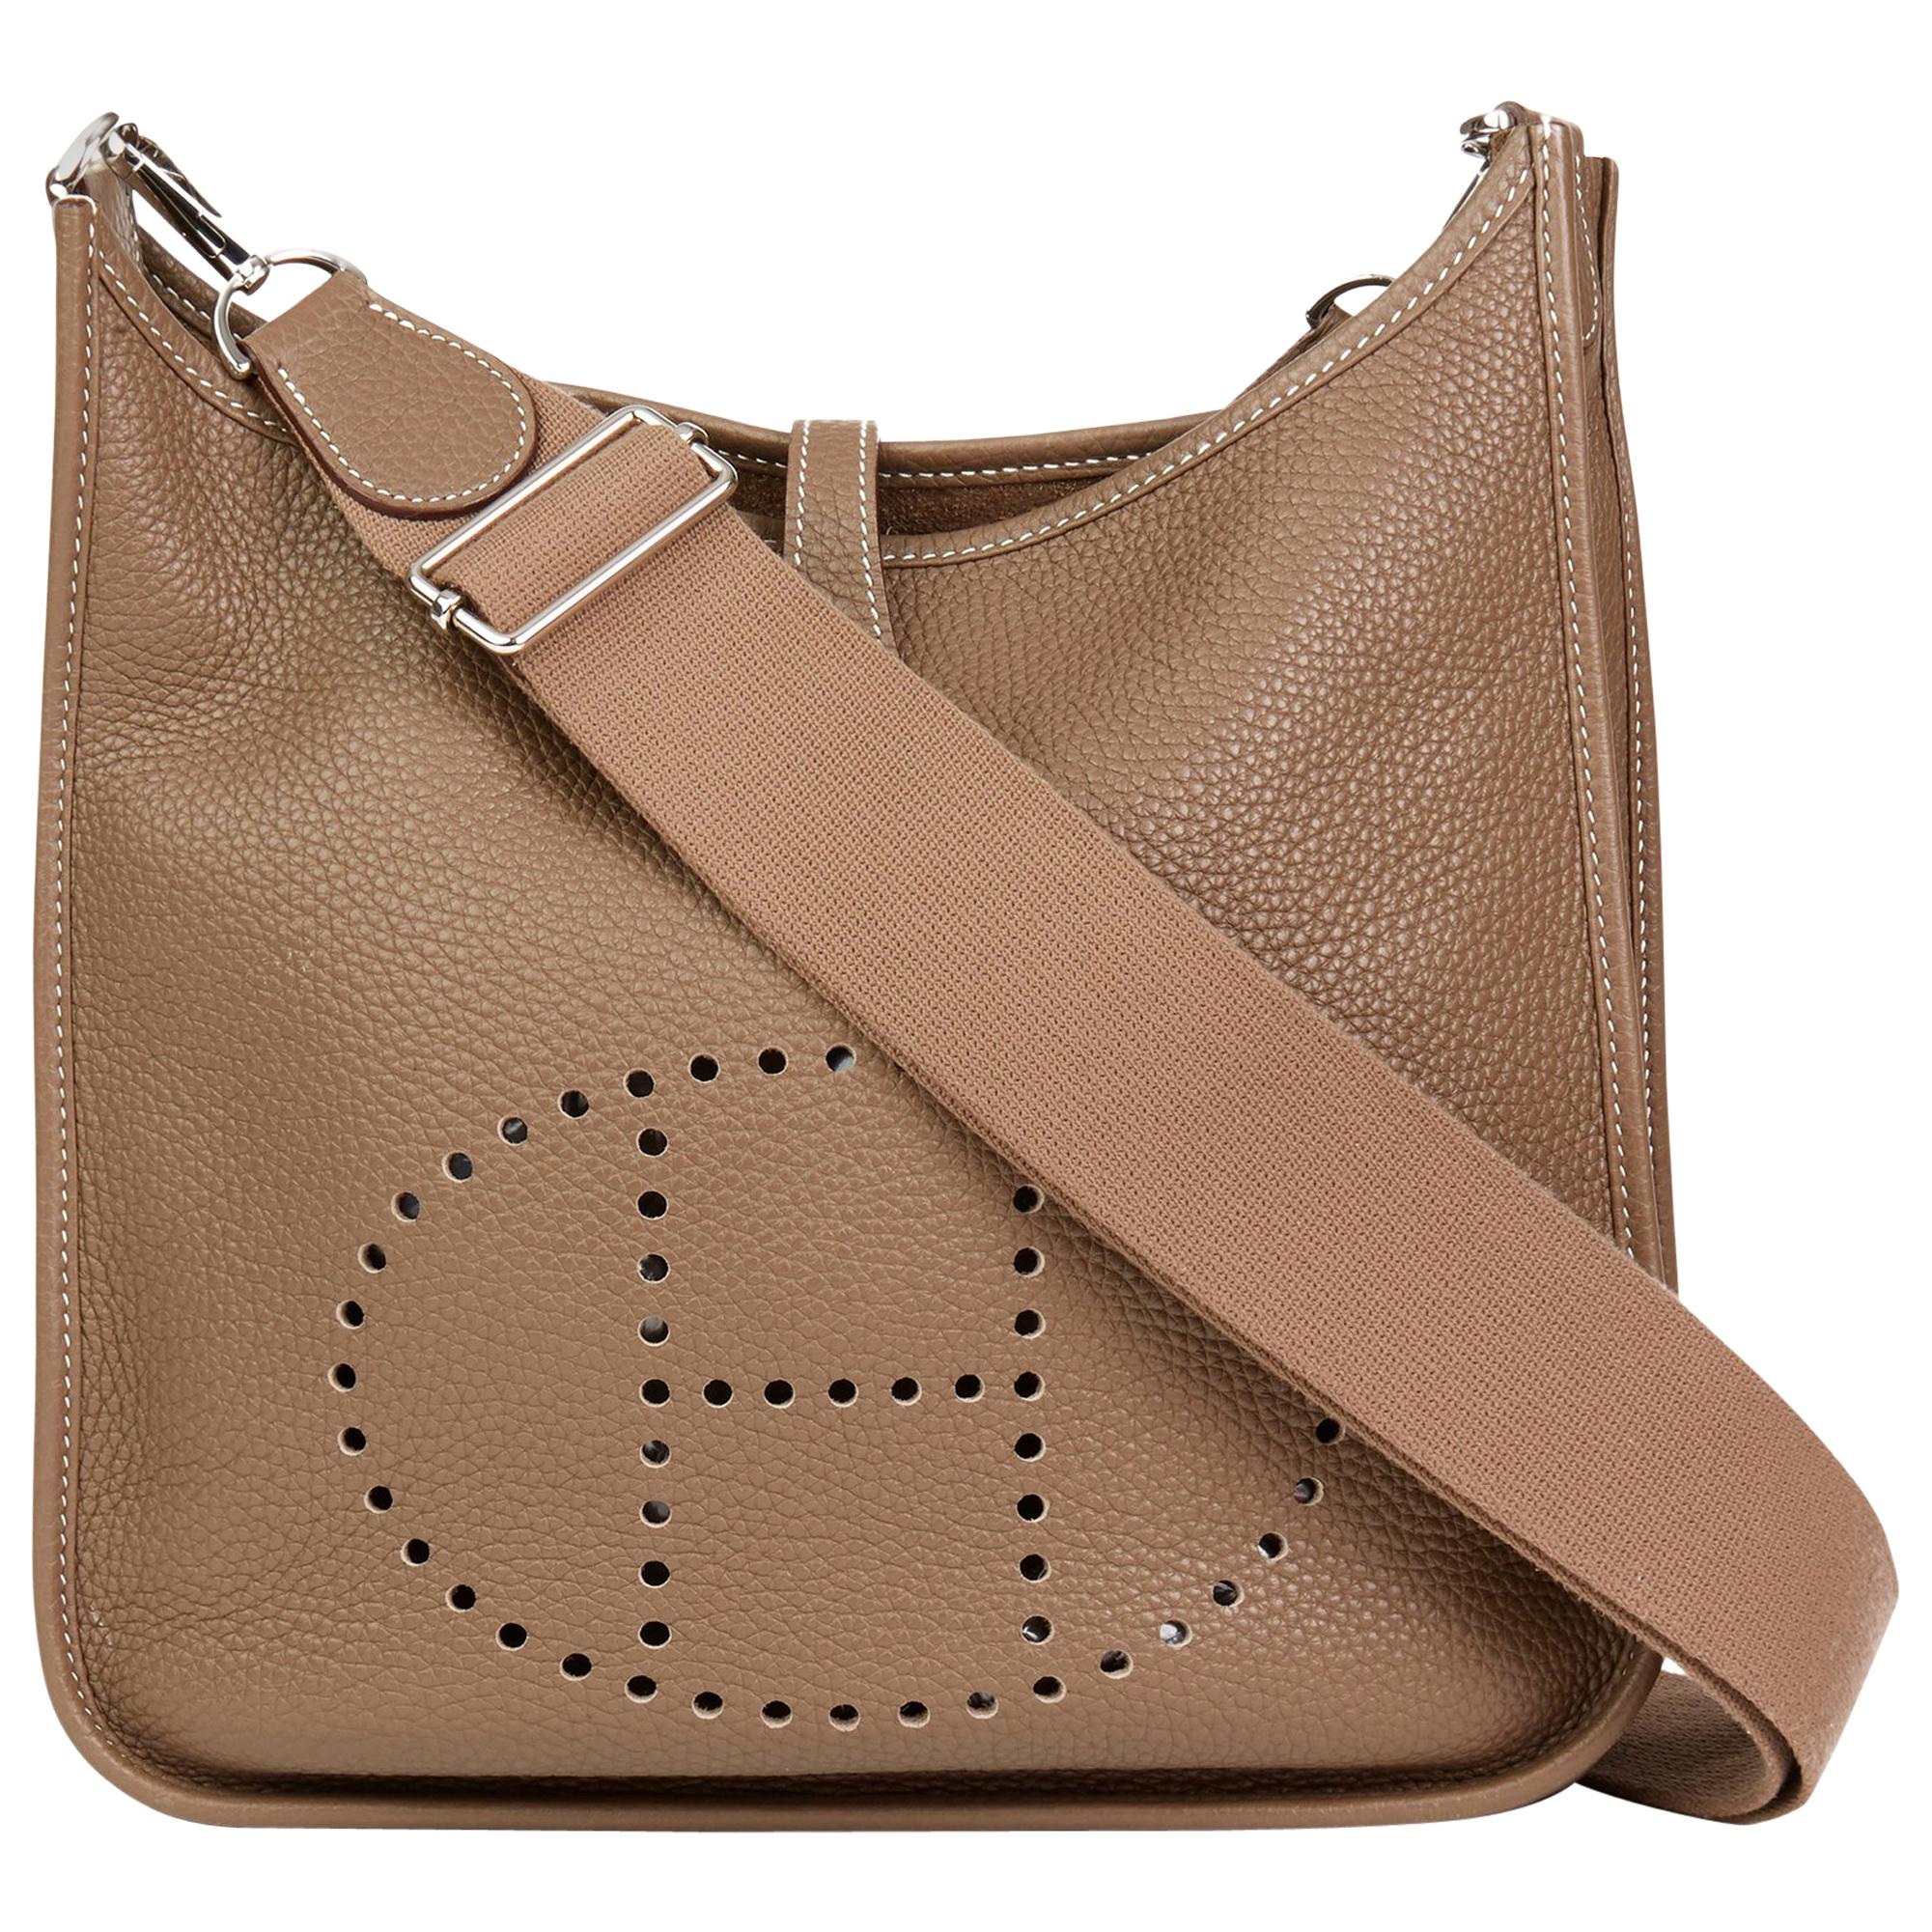 Hermes Bag Strap 70cm - 2 For Sale on 1stDibs